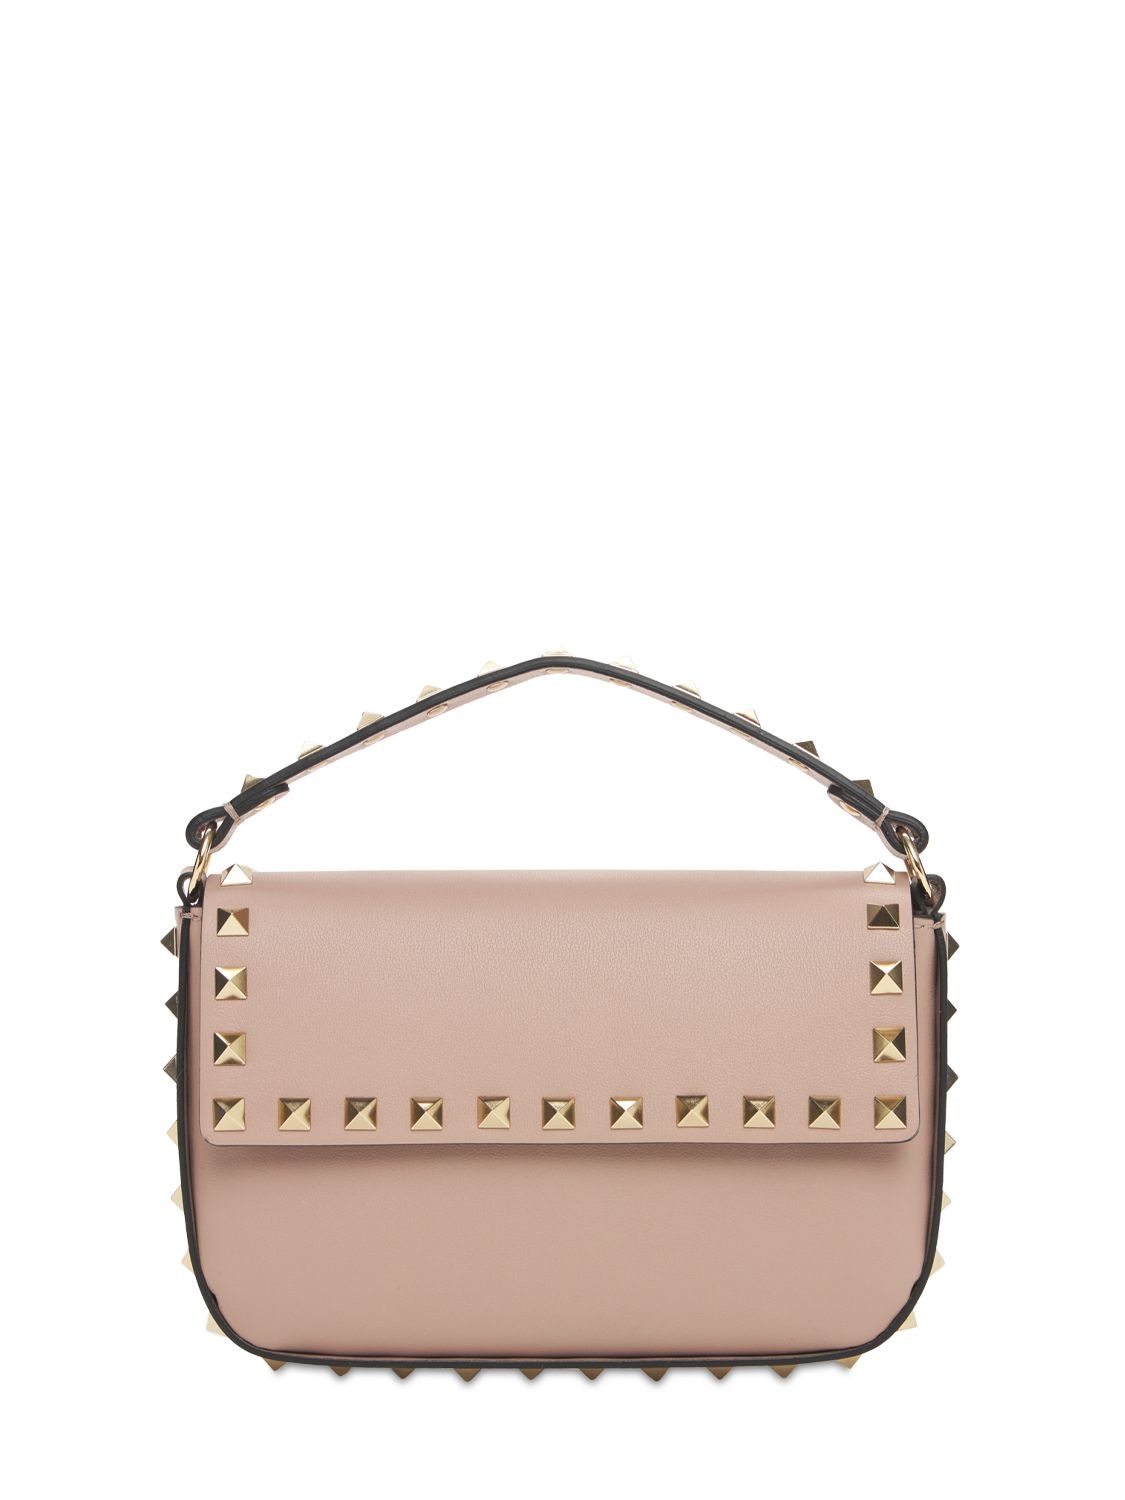 Valentino Garavani Small Leather Rockstud Top Handle Bag In Poudre